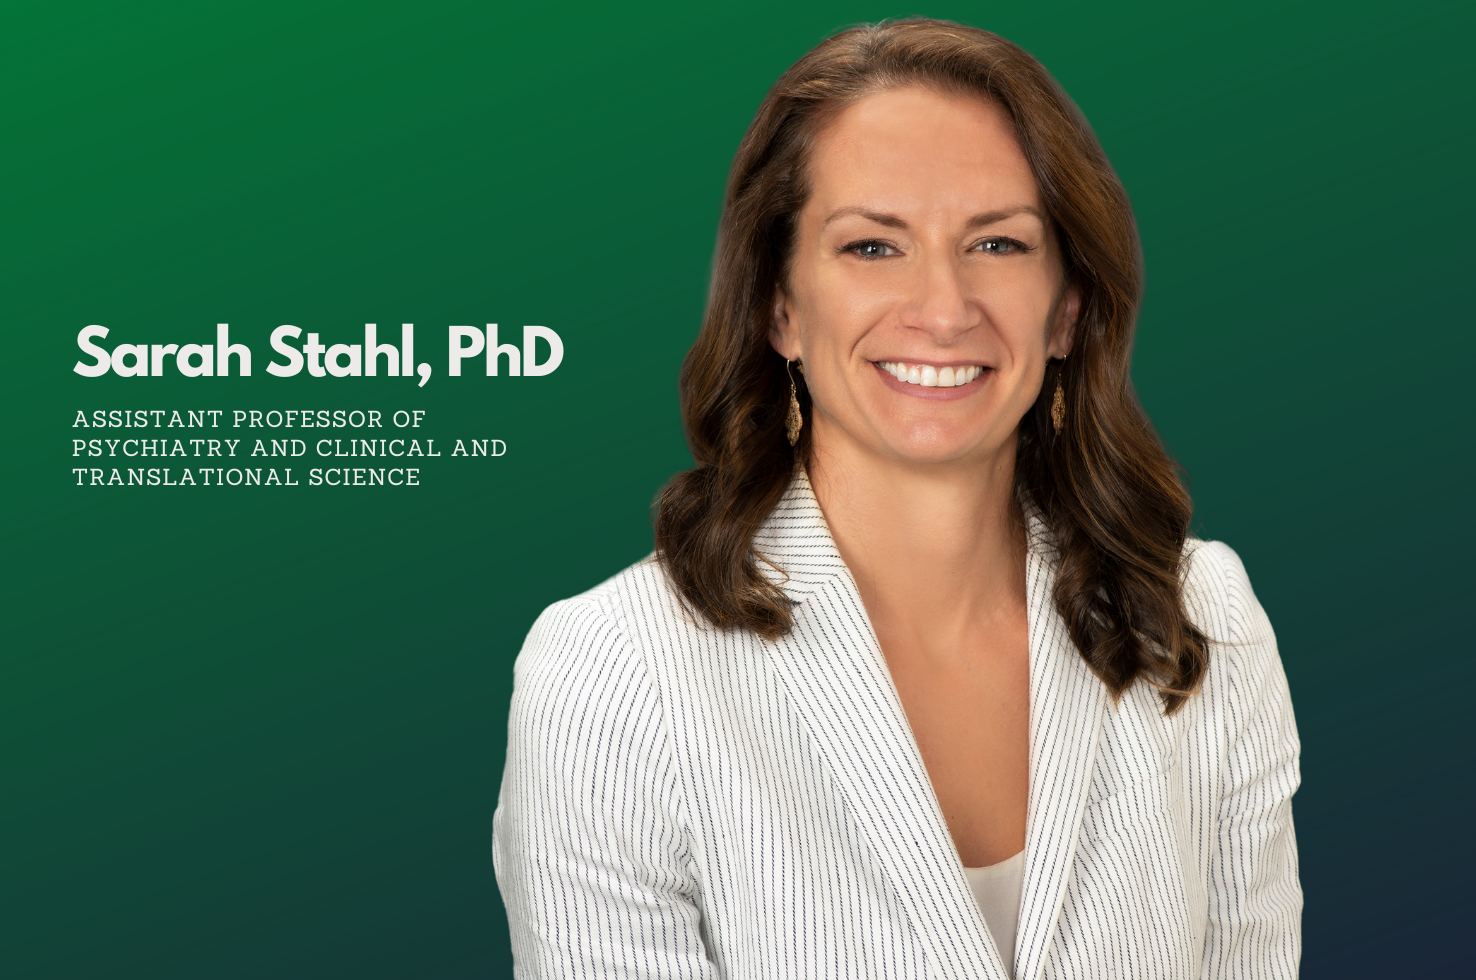 Dr. Sarah Stahl